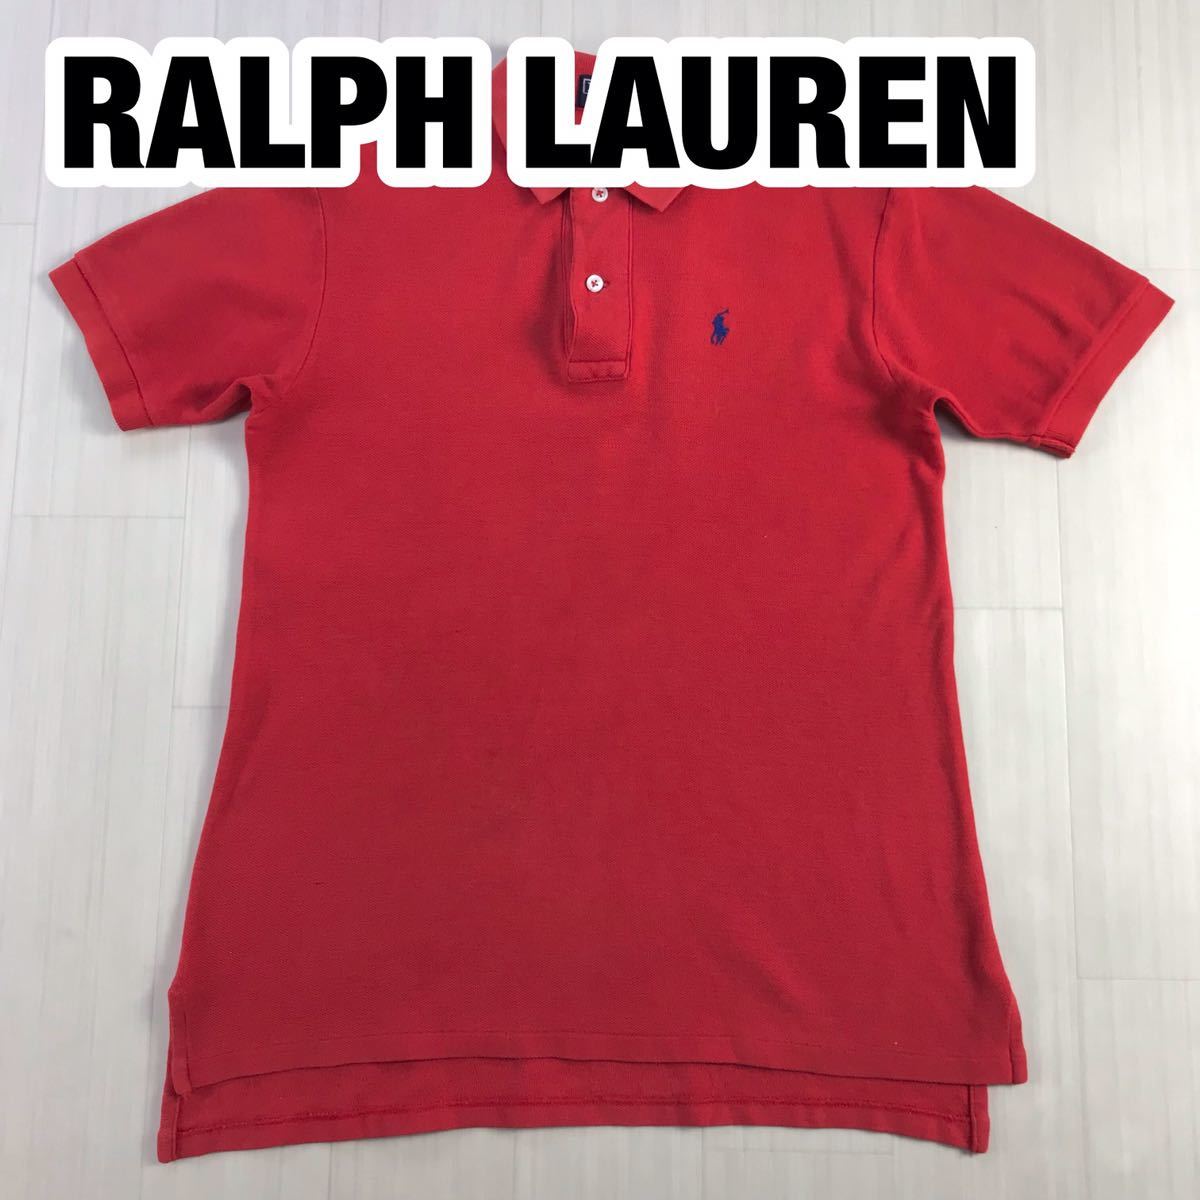 RALPH LAUREN ラルフローレン 半袖ポロシャツ S レッド ナイガイ_画像1